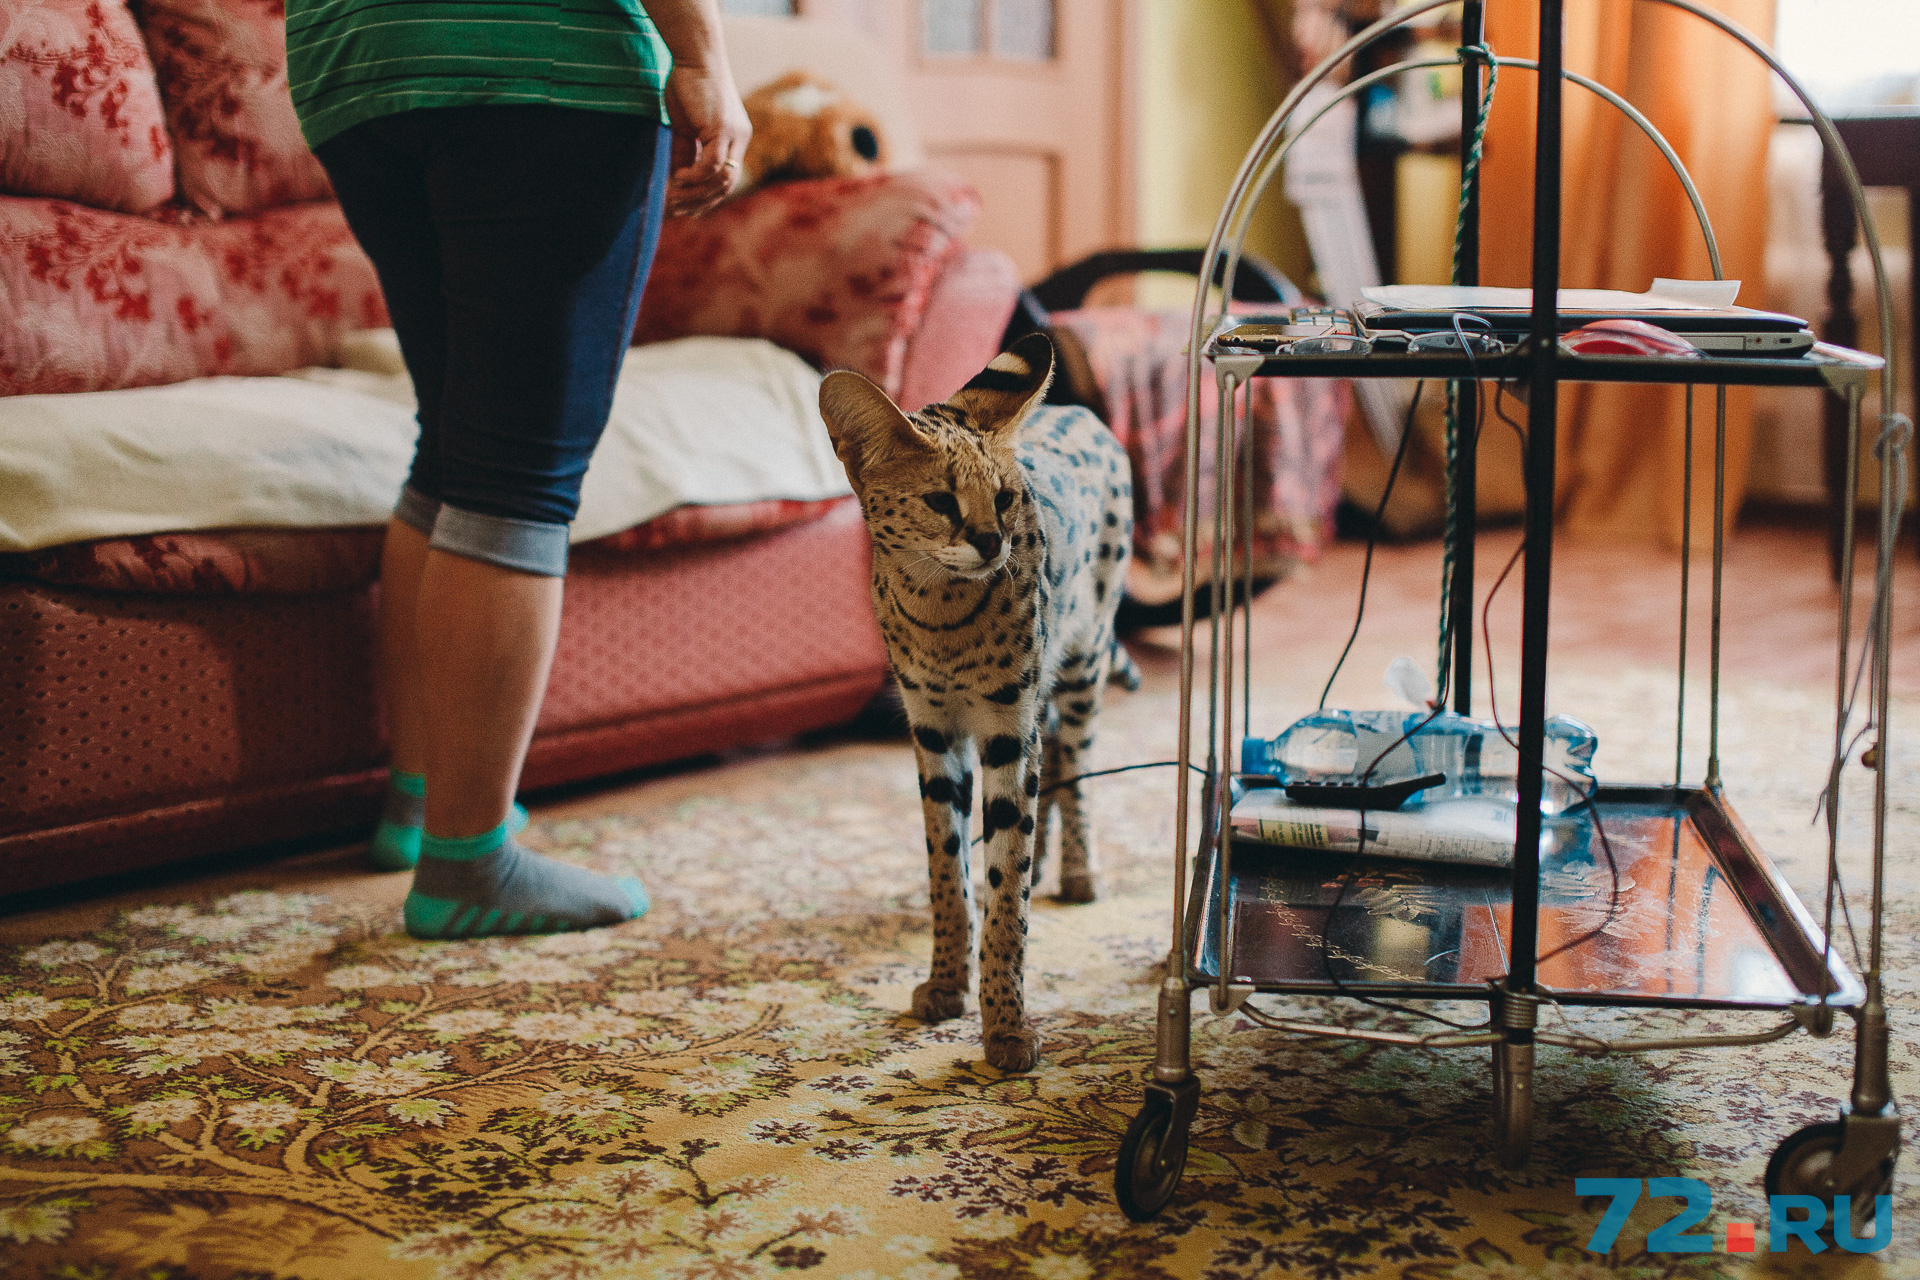 В Великобритания бум на саванну – помесь домашней кошки и сервала